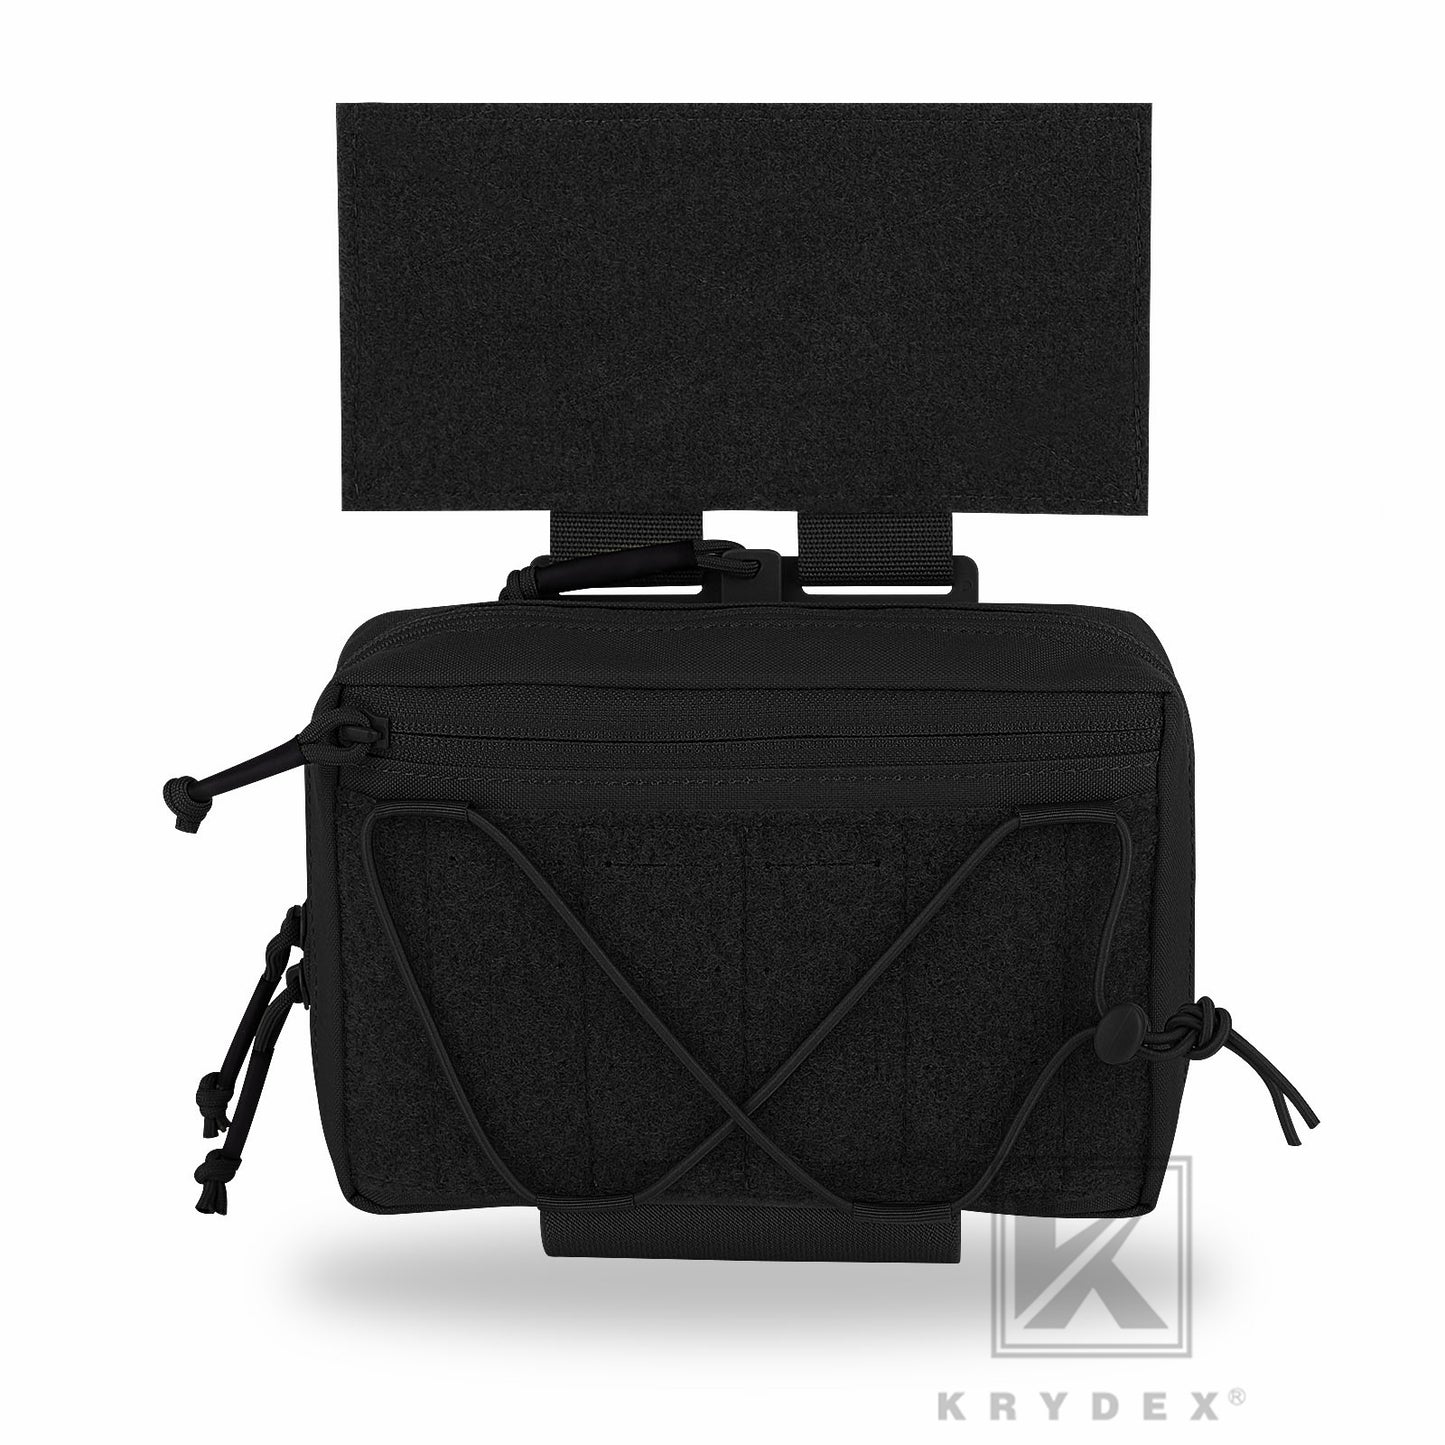 Krydex Tactical Quick Release Drop Pouch Modular Fanny Pack Waist Bag